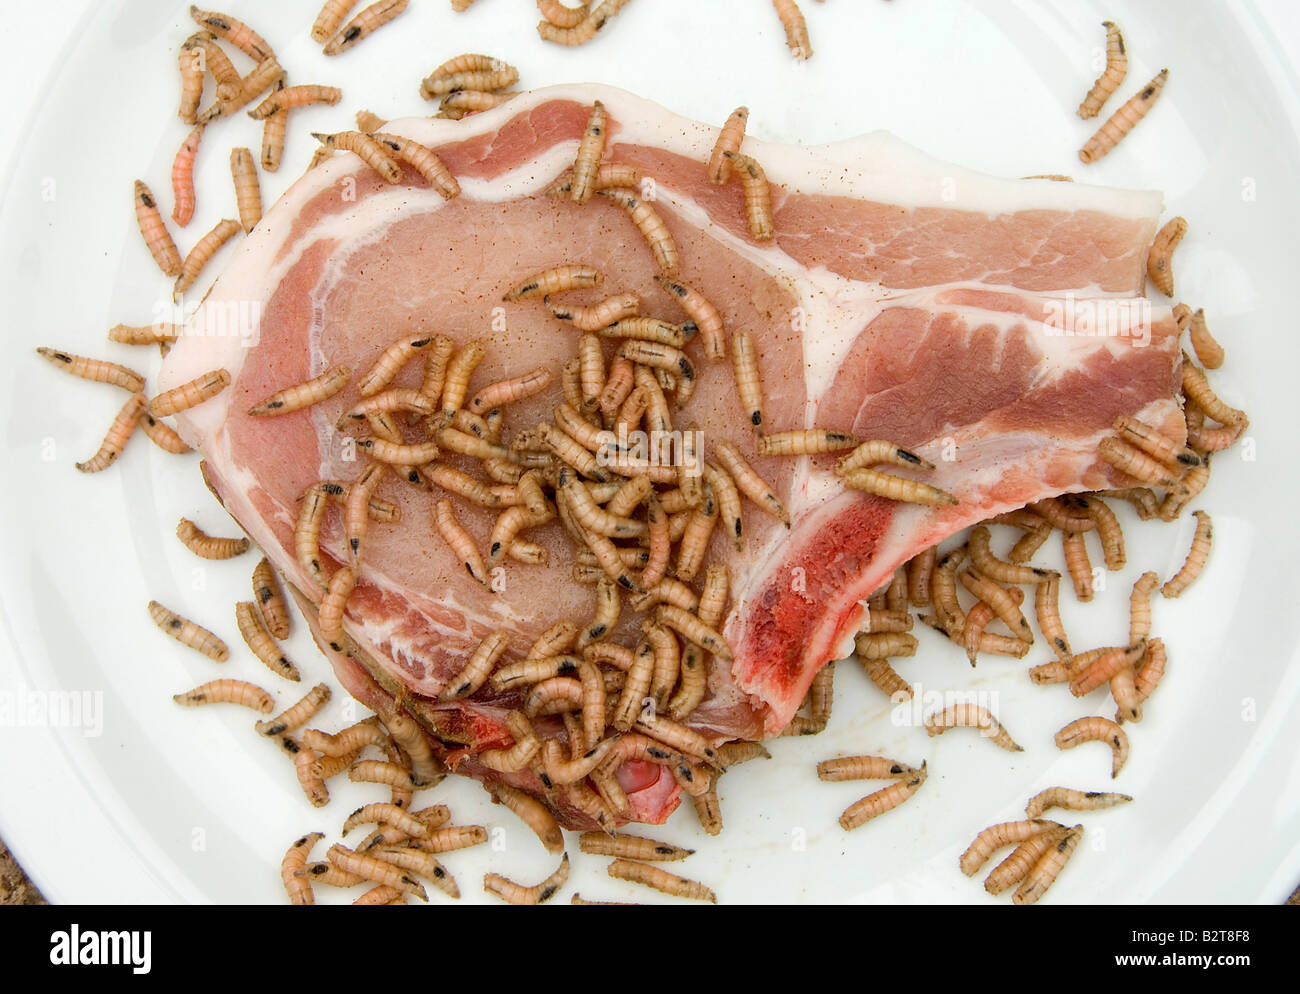 Vermi di carne in decomposizione Foto Stock